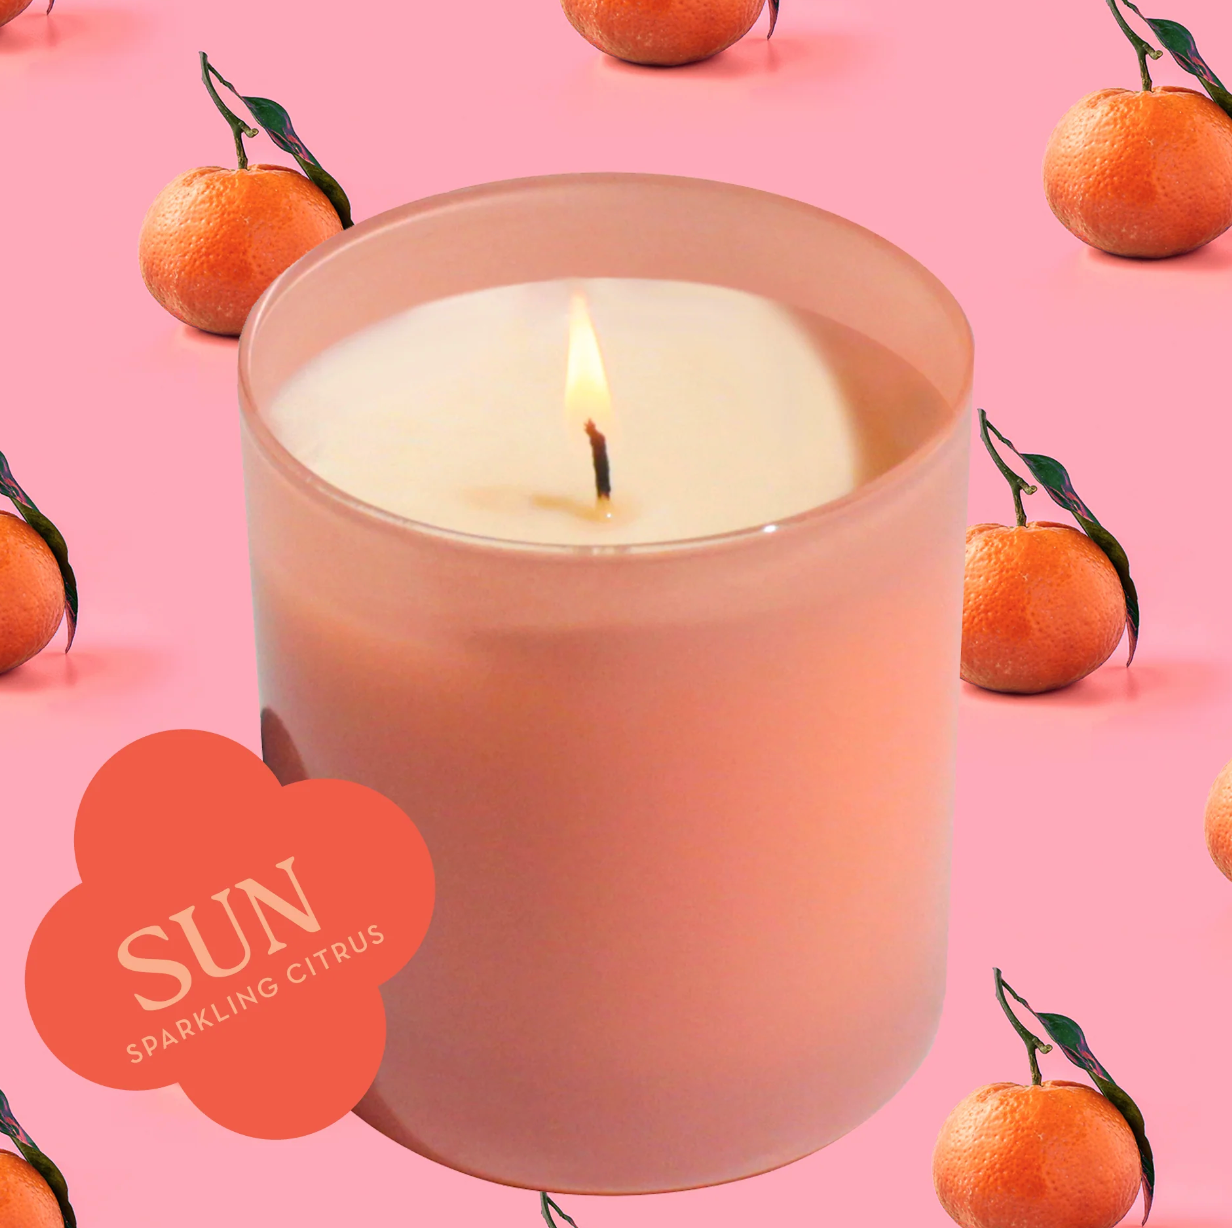 Sun 9 oz. soy  Candle (Sparkling Citrus)